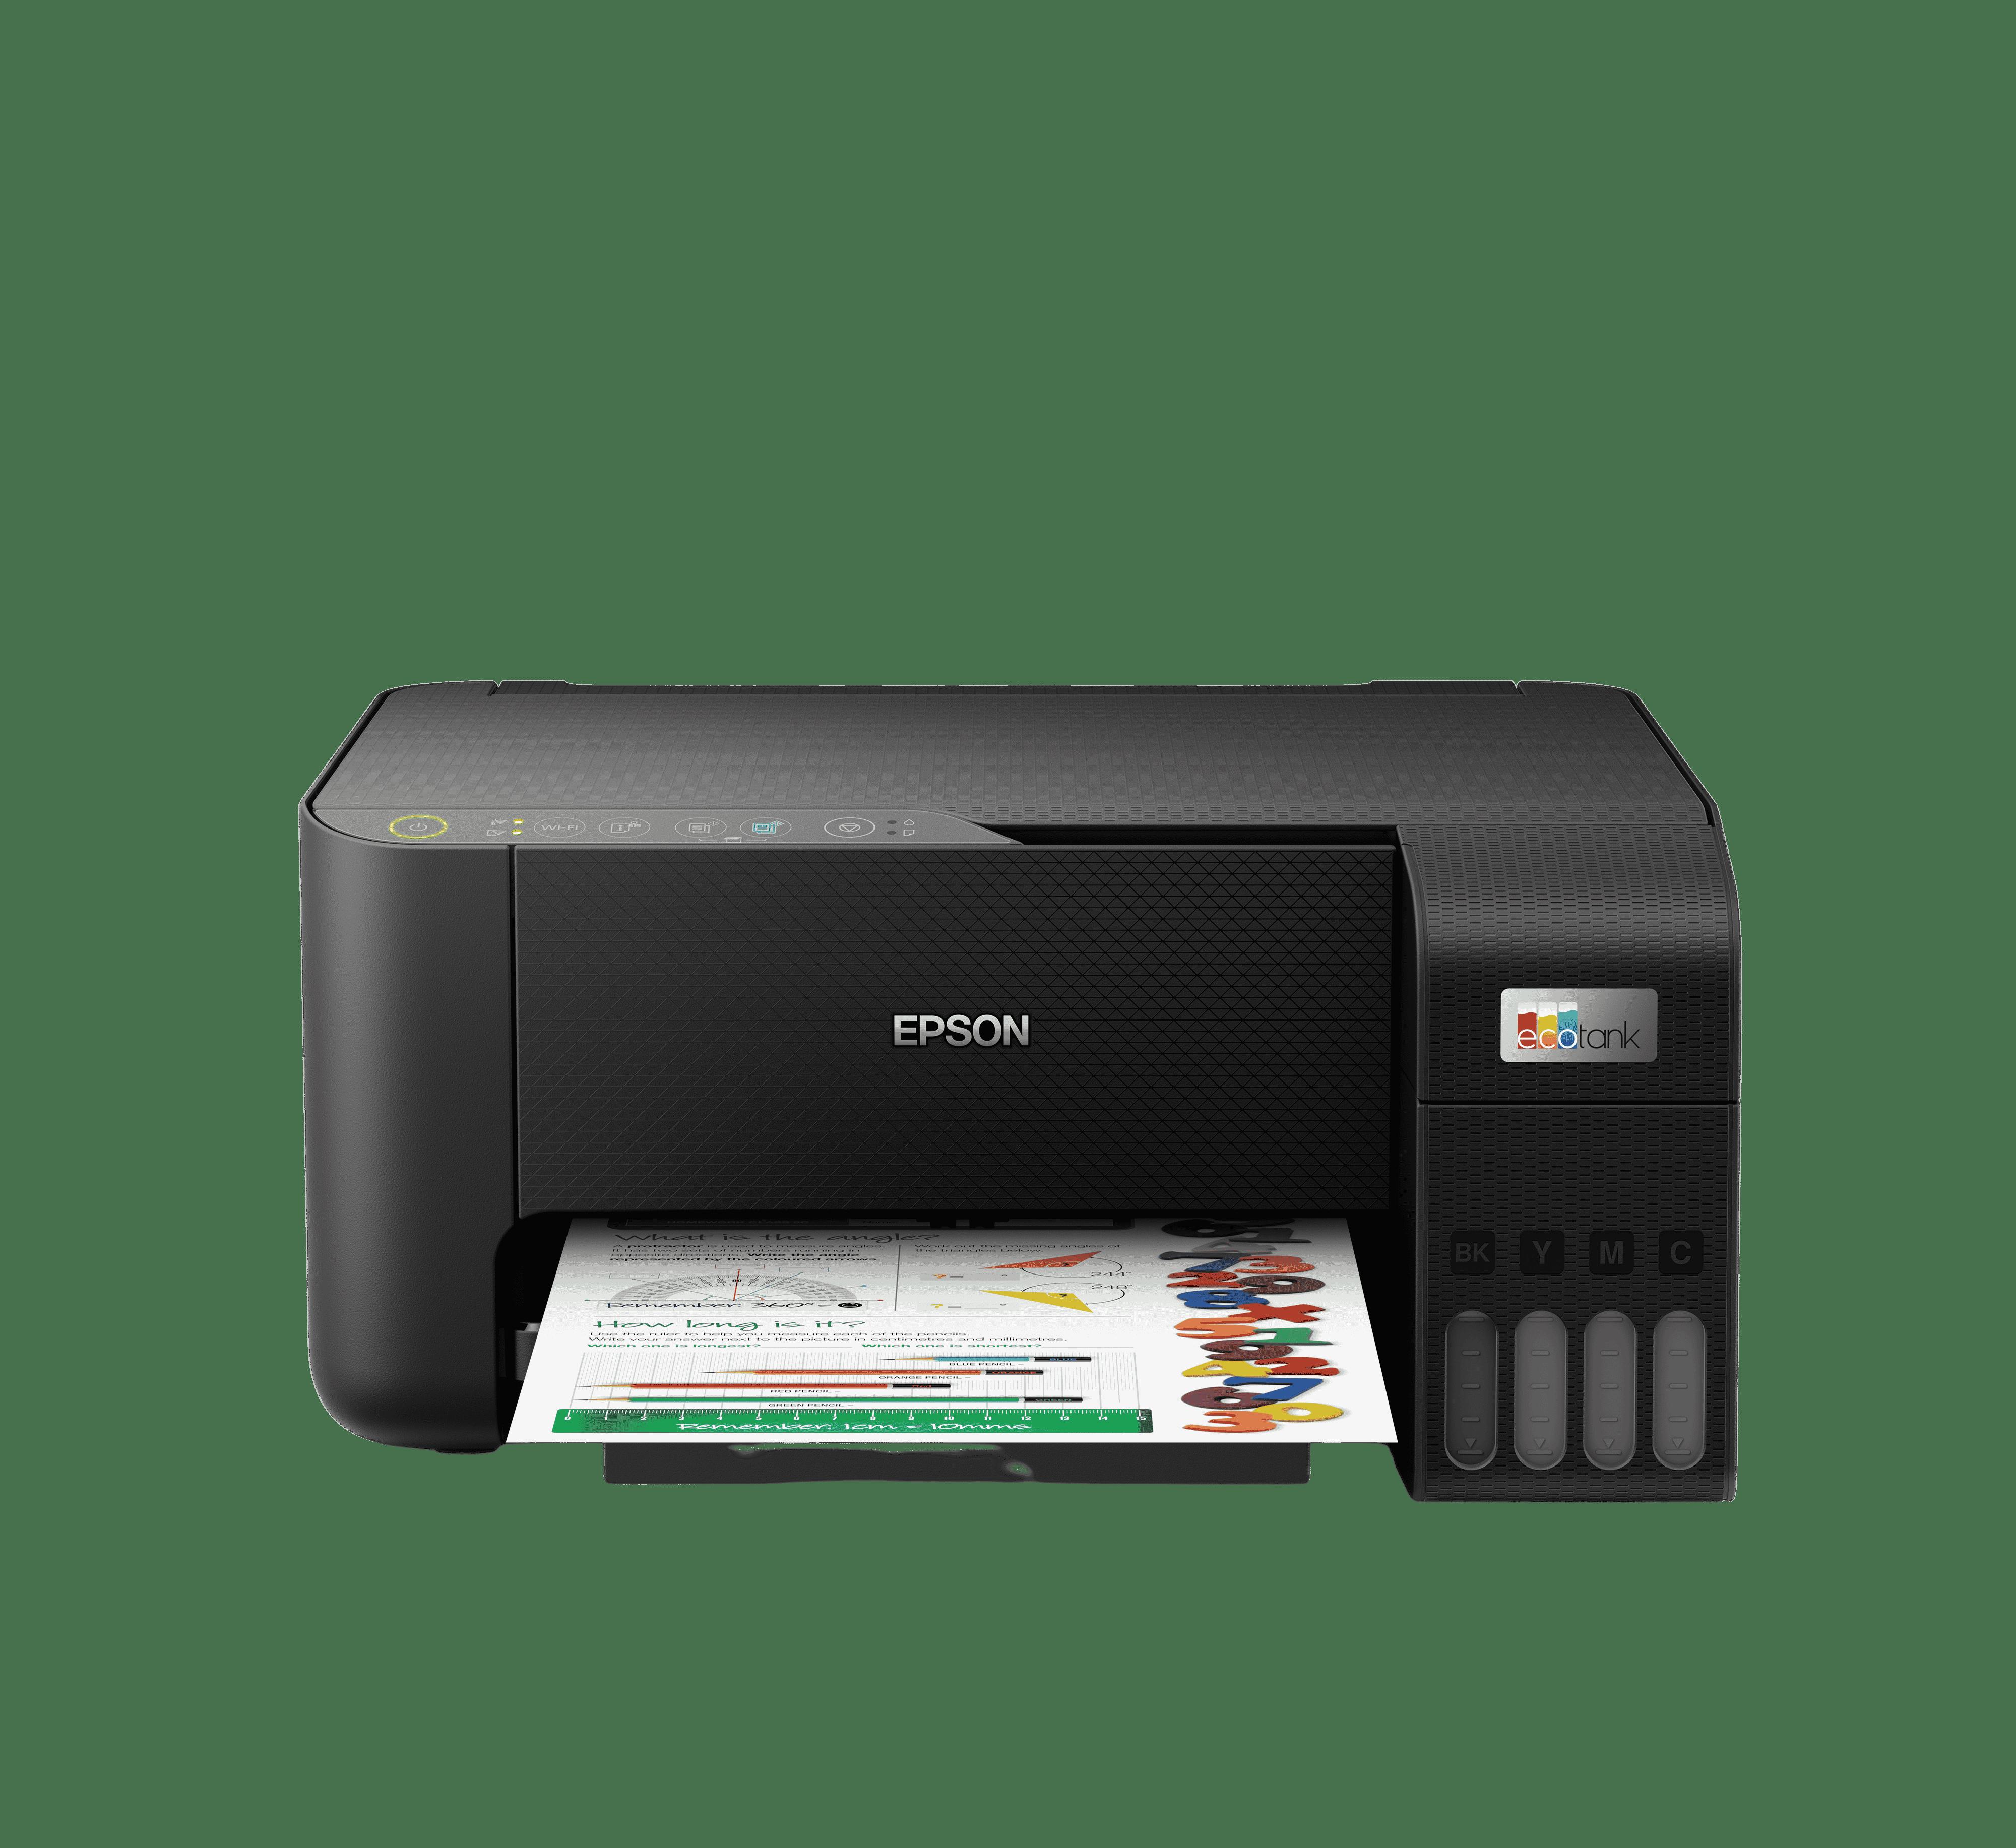 Epson EcoTank ET-2810 Print/Scan/Copy Wi-Fi Printer, Black